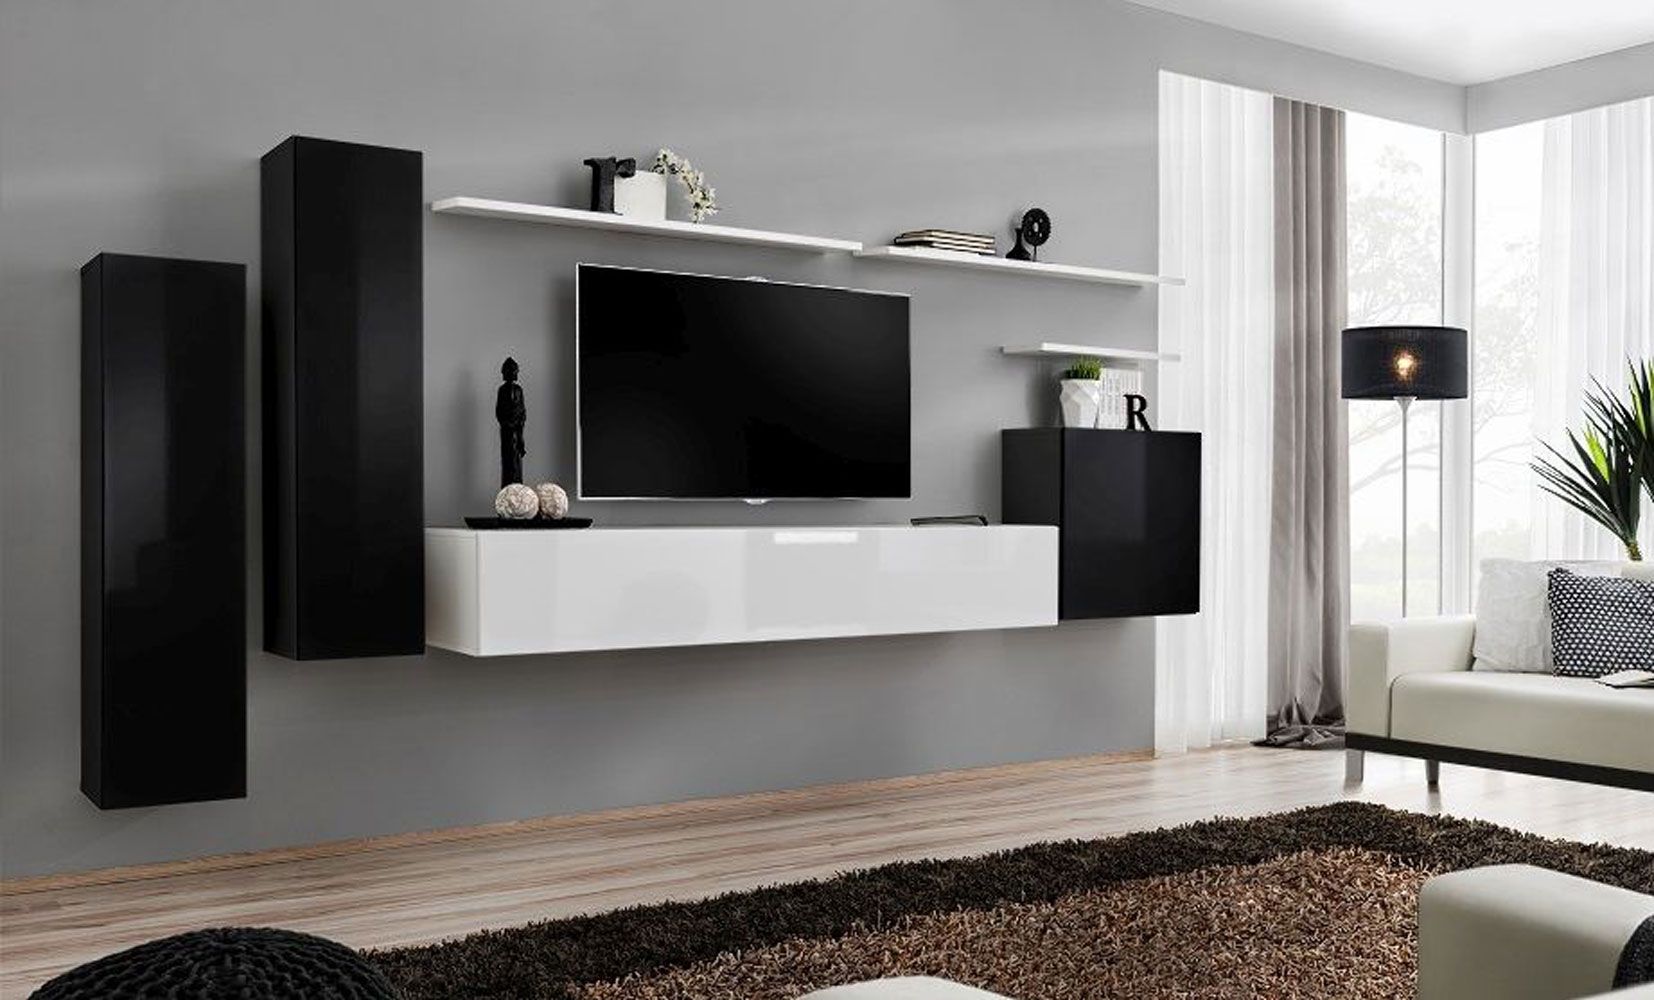 Bovenkast in elegant Balestrand 06-design, kleur: zwart / wit - Afmetingen: 160 x 330 x 40 cm (H x B x D), met push-to-open functie